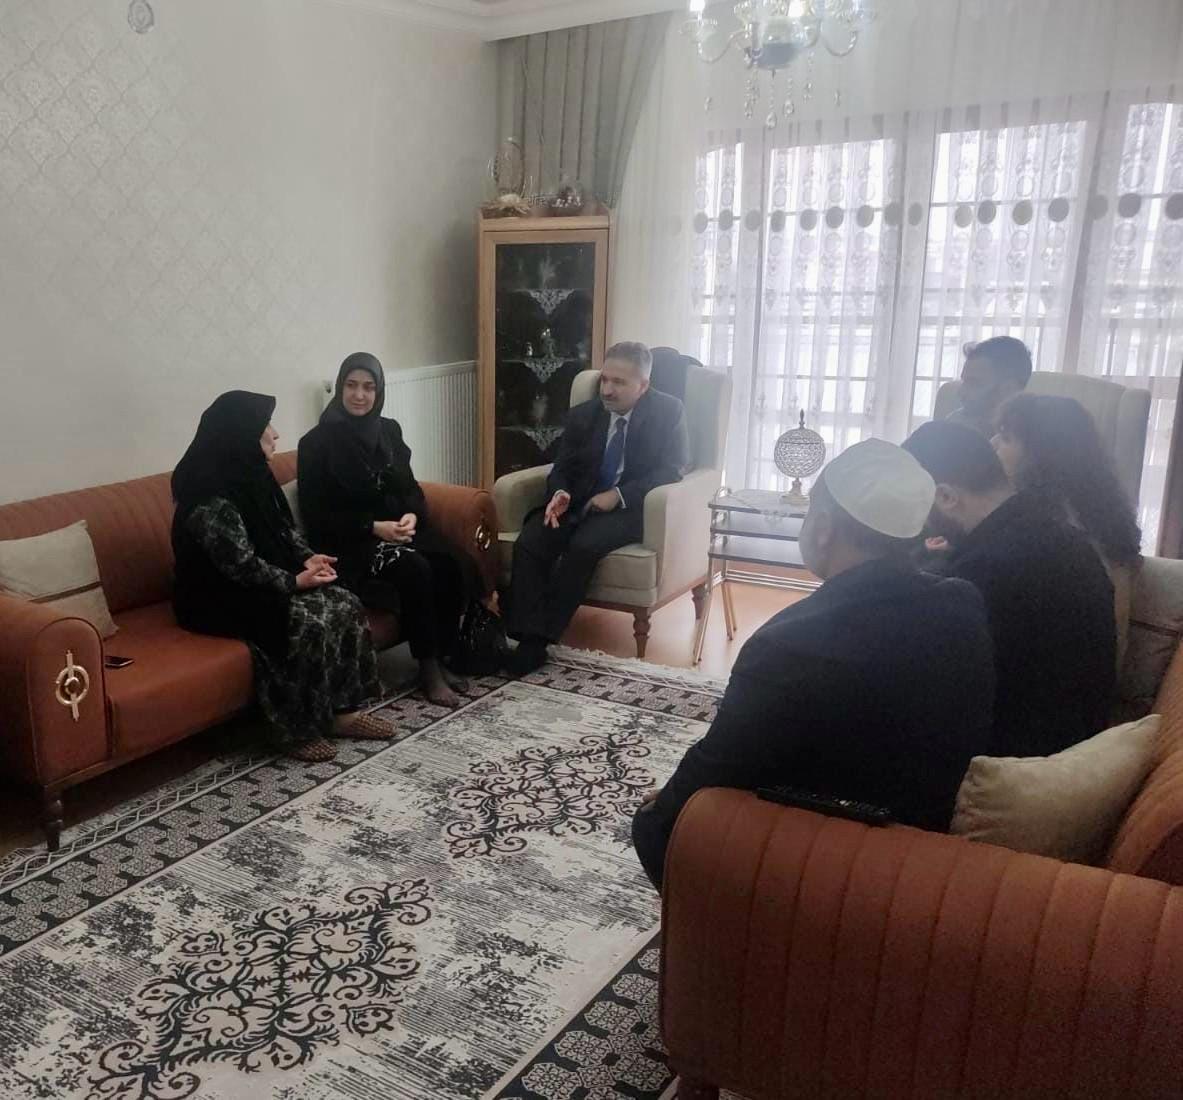 Kaymakamımız Mehmet Emin Taşçı, Ayşenur Taşçı Hanımefendi ile aziz şehitlerimiz Ömer Harun Demir ve Yakup Balbey'in ailelerine ziyaretlerde bulundu.